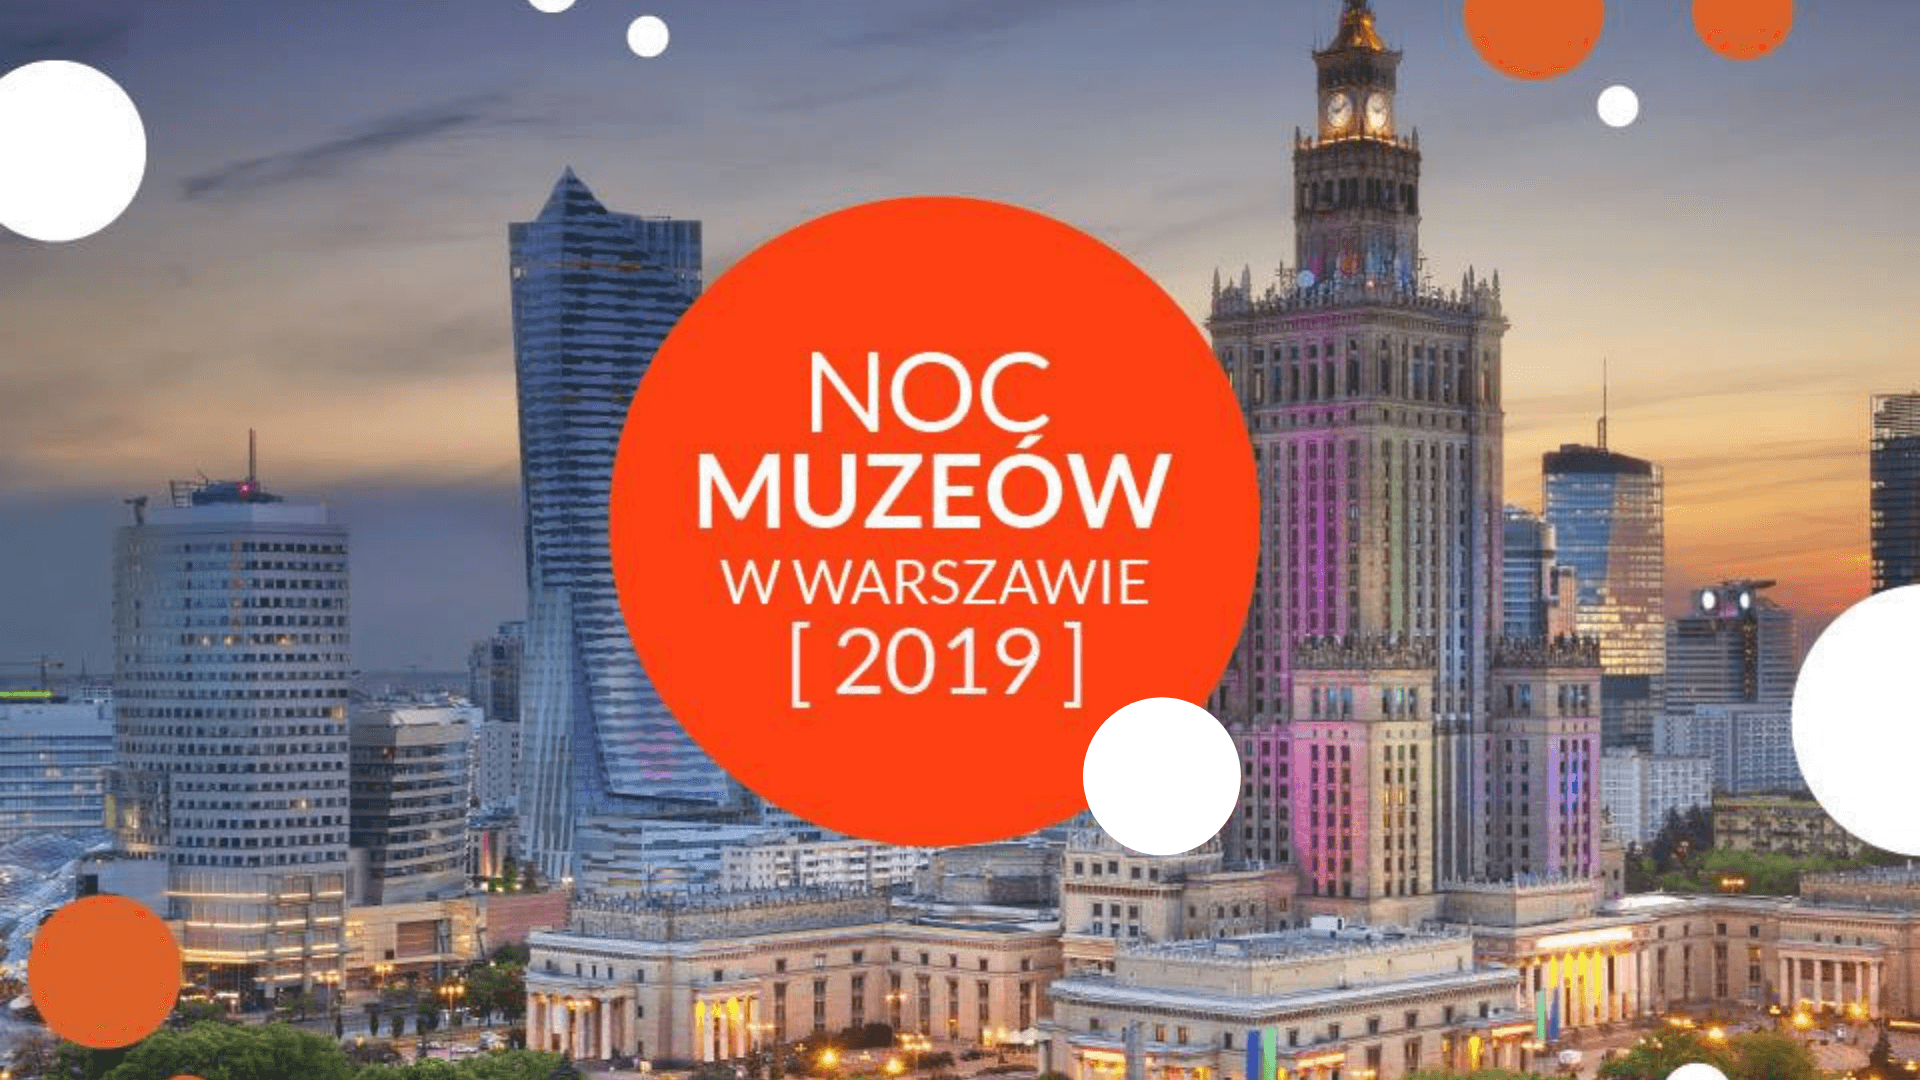 Ніч музеїв 2019 у Варшаві